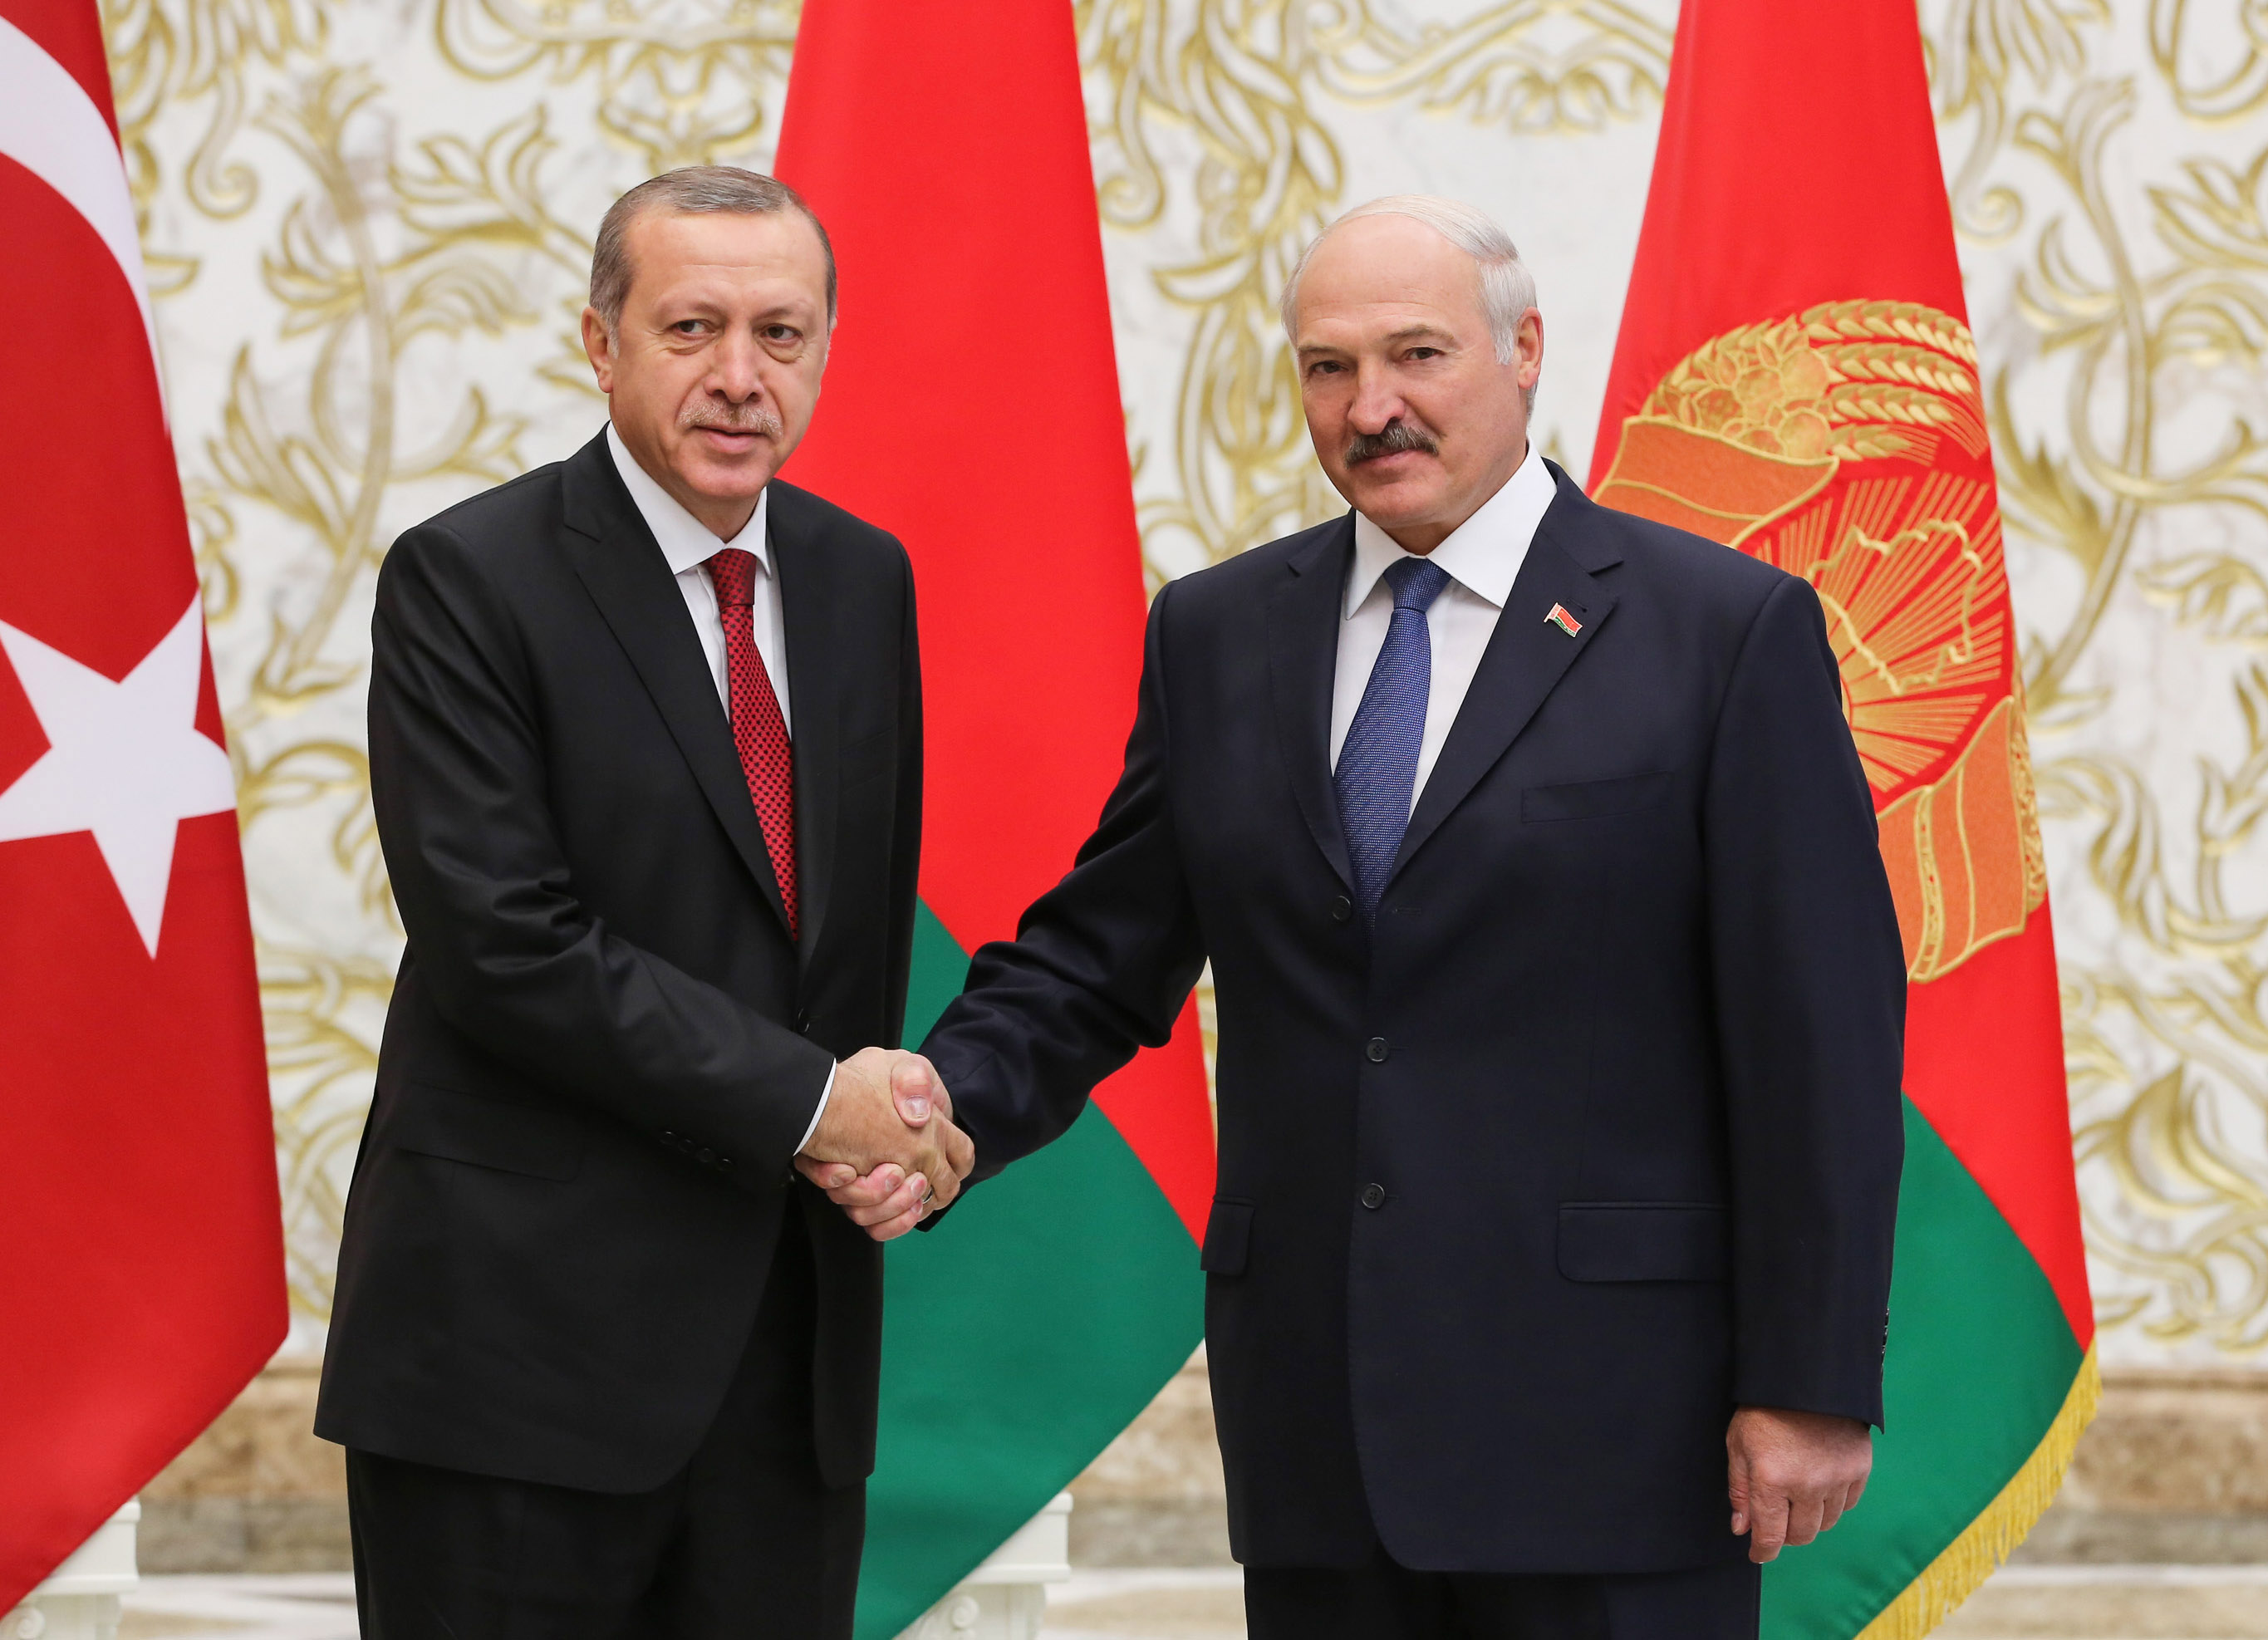 Александр Лукашенко: Динамика отношений Беларуси и Турции - положительная и существует хороший прогресс